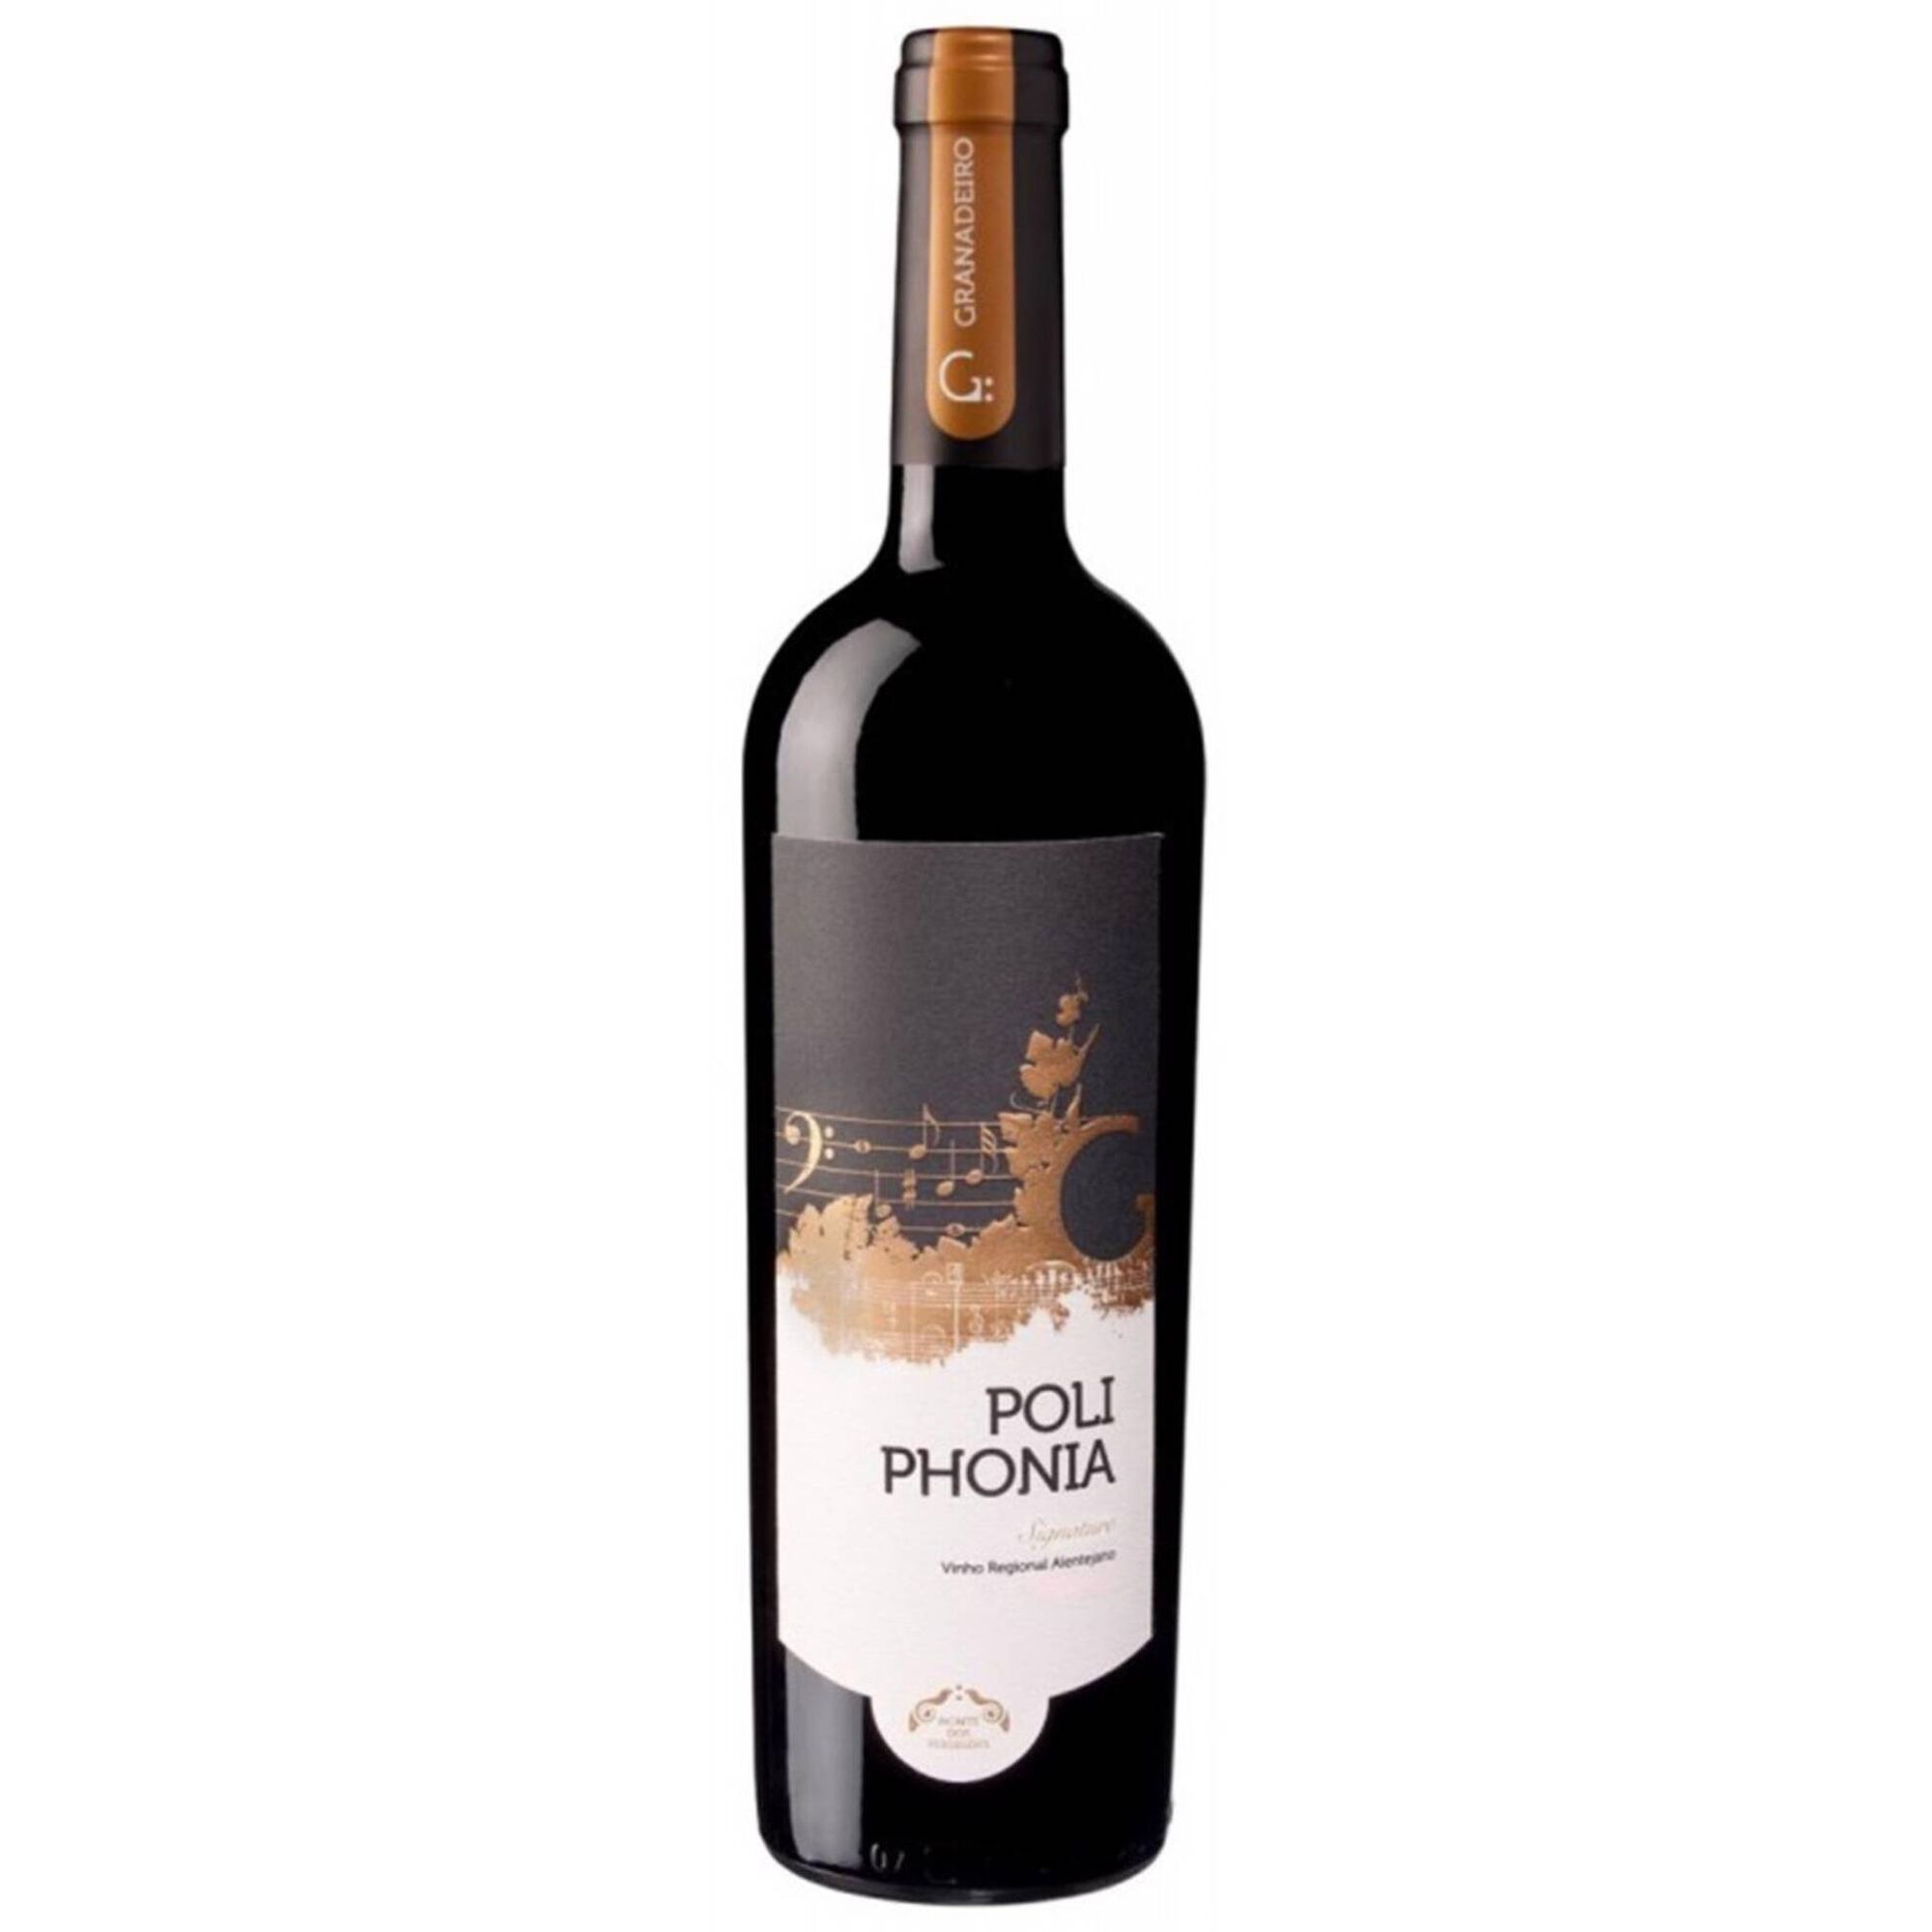 Poliphonia Signature Regional Alentejano Vinho Tinto